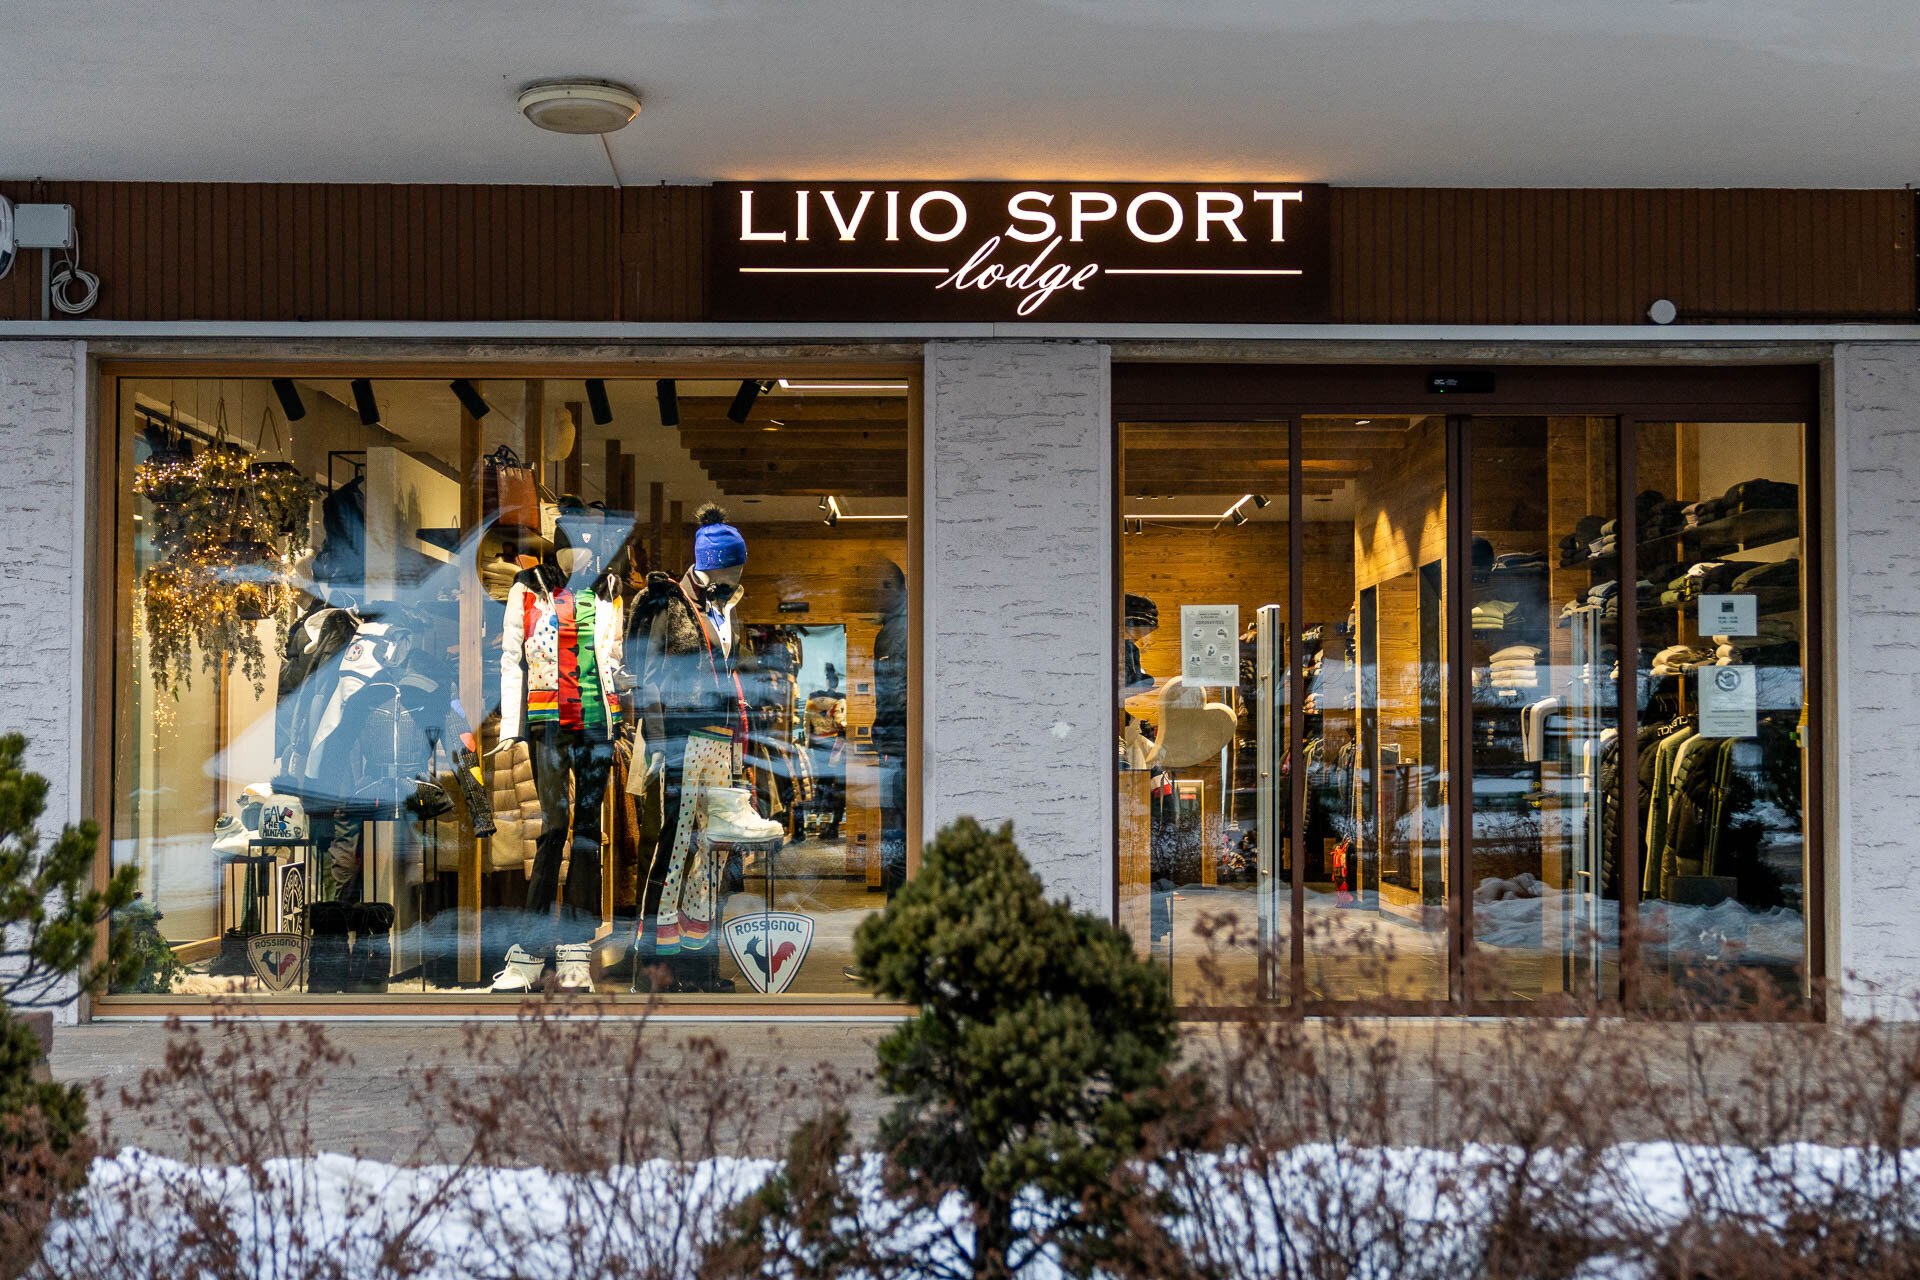 Livio Sport Lodge